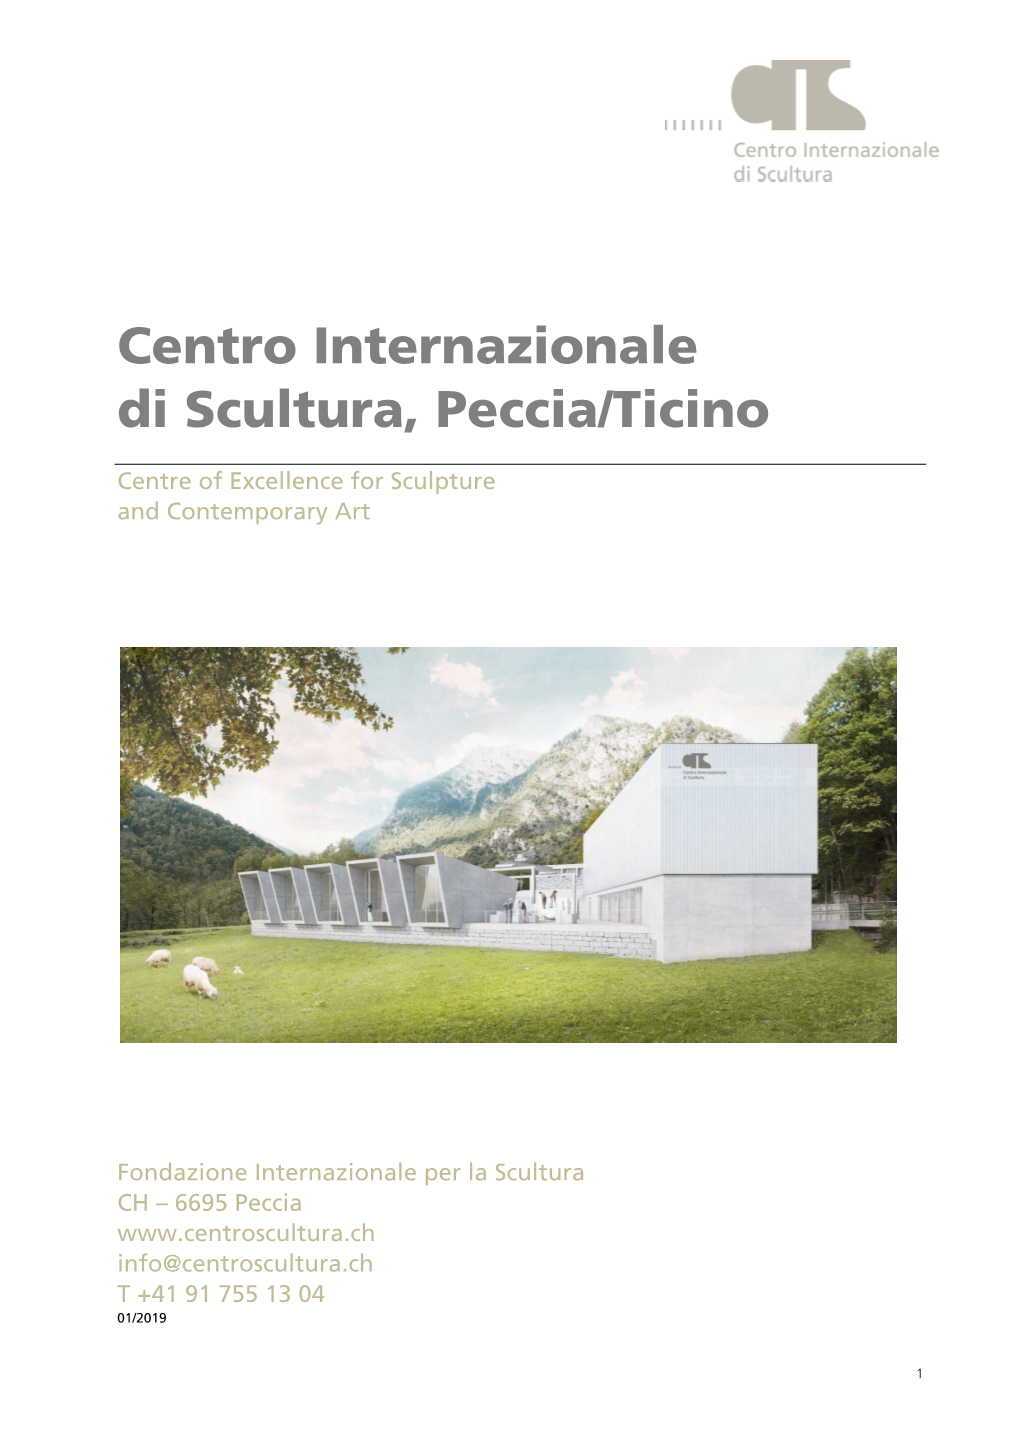 Centro Internazionale Di Scultura, Peccia/Ticino